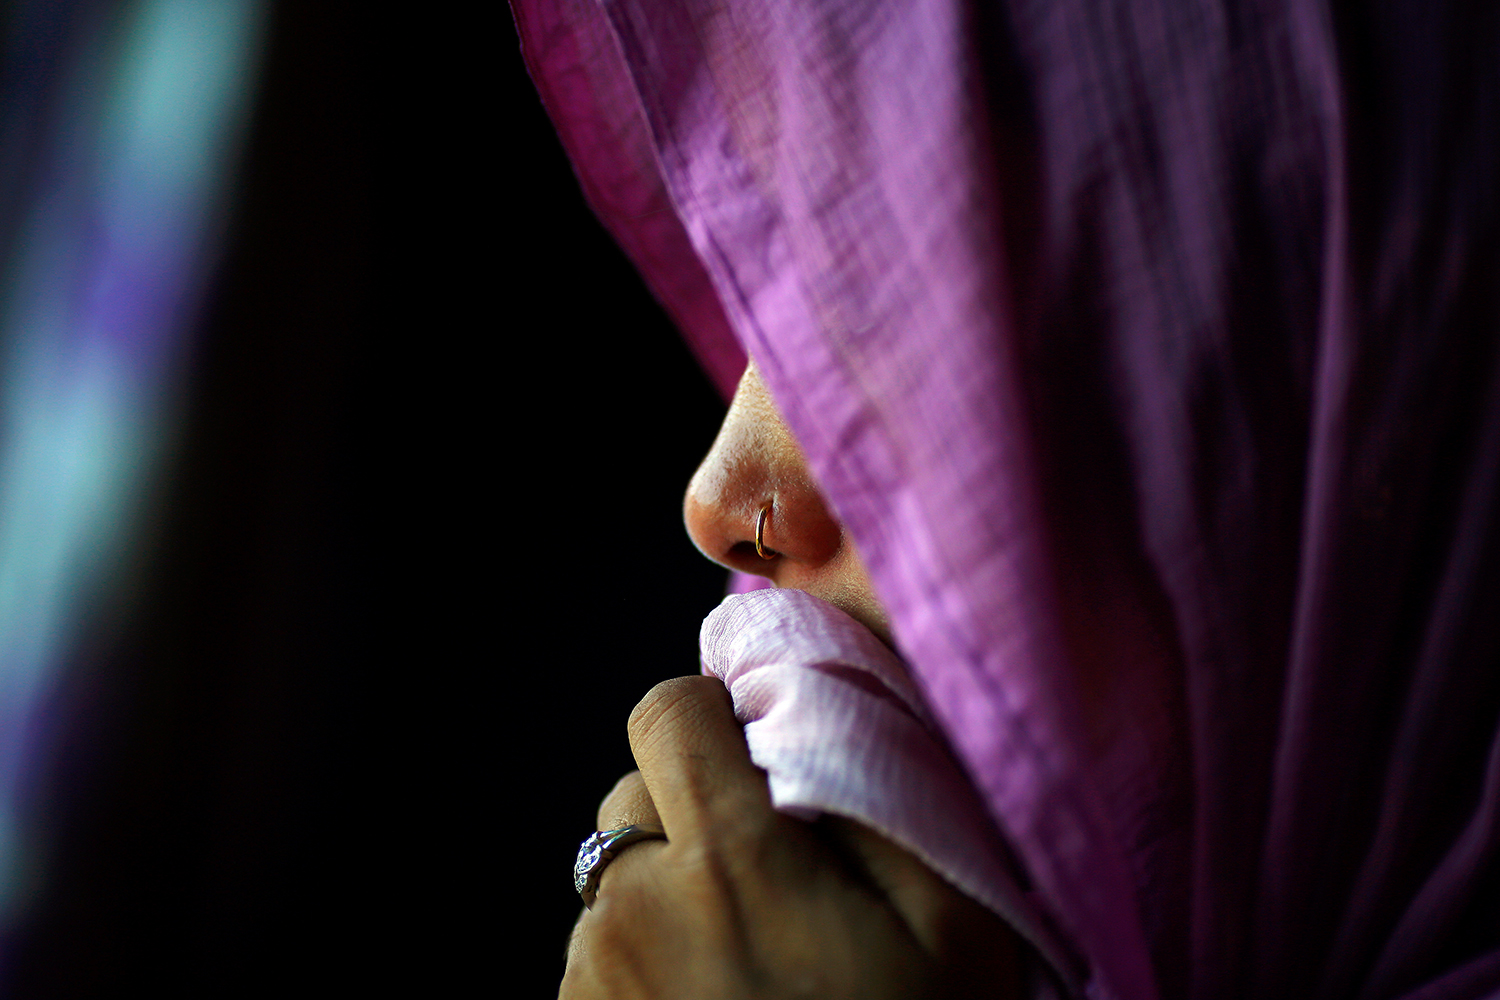 Drama en India: una mujer vende a su bebé por 133 euros para evitar la "vergüenza social"